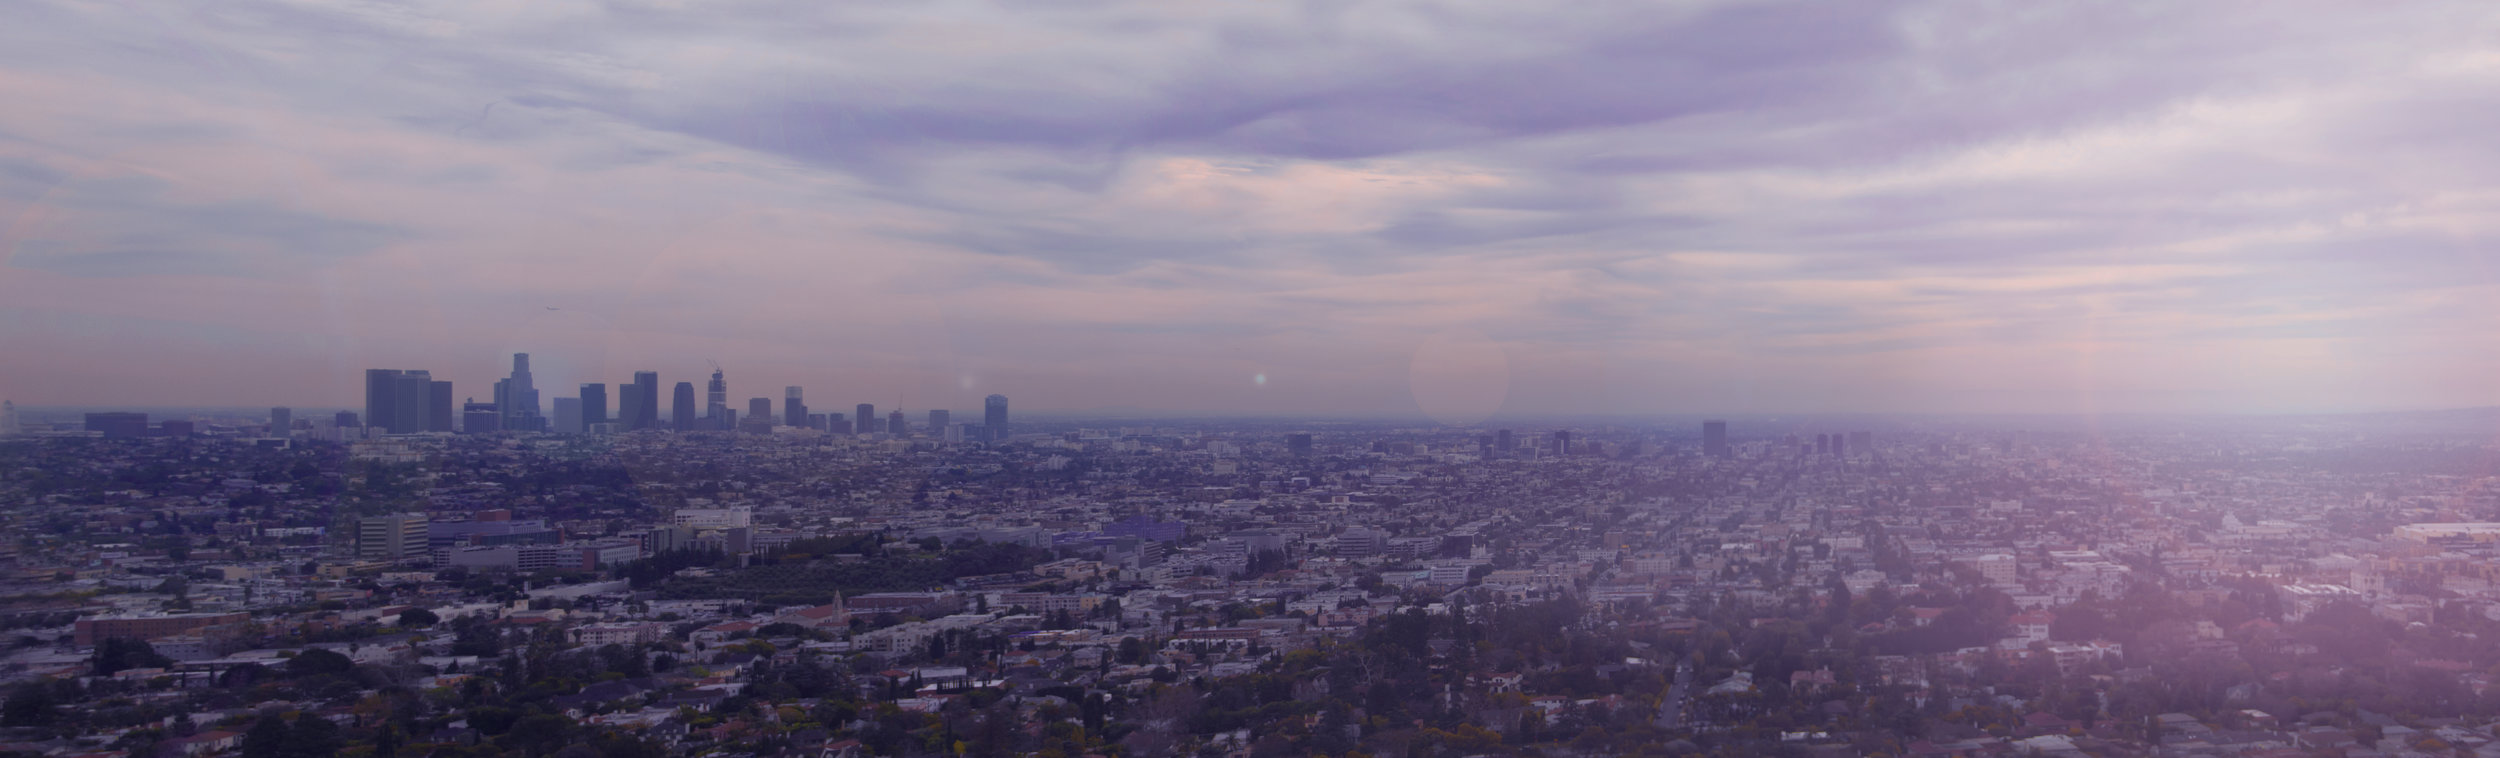 Los Angeles Panorama.jpg